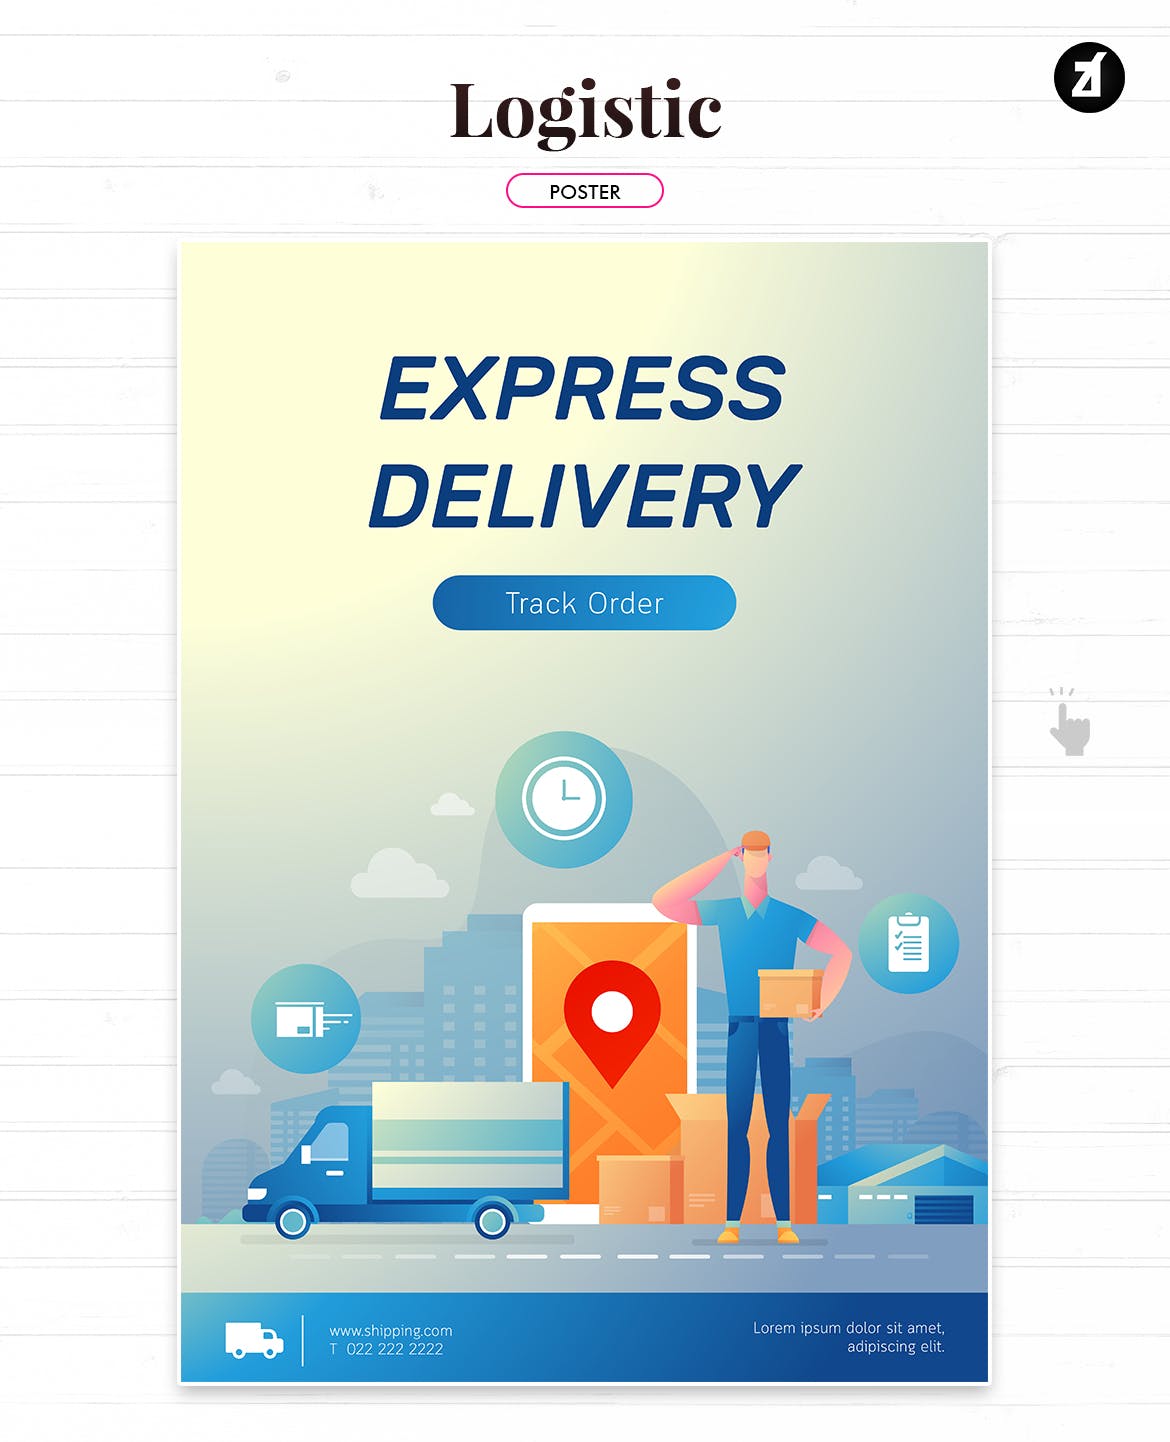 物流配送主题矢量插画设计素材 Logistic and delivery illustration with layout插图(3)